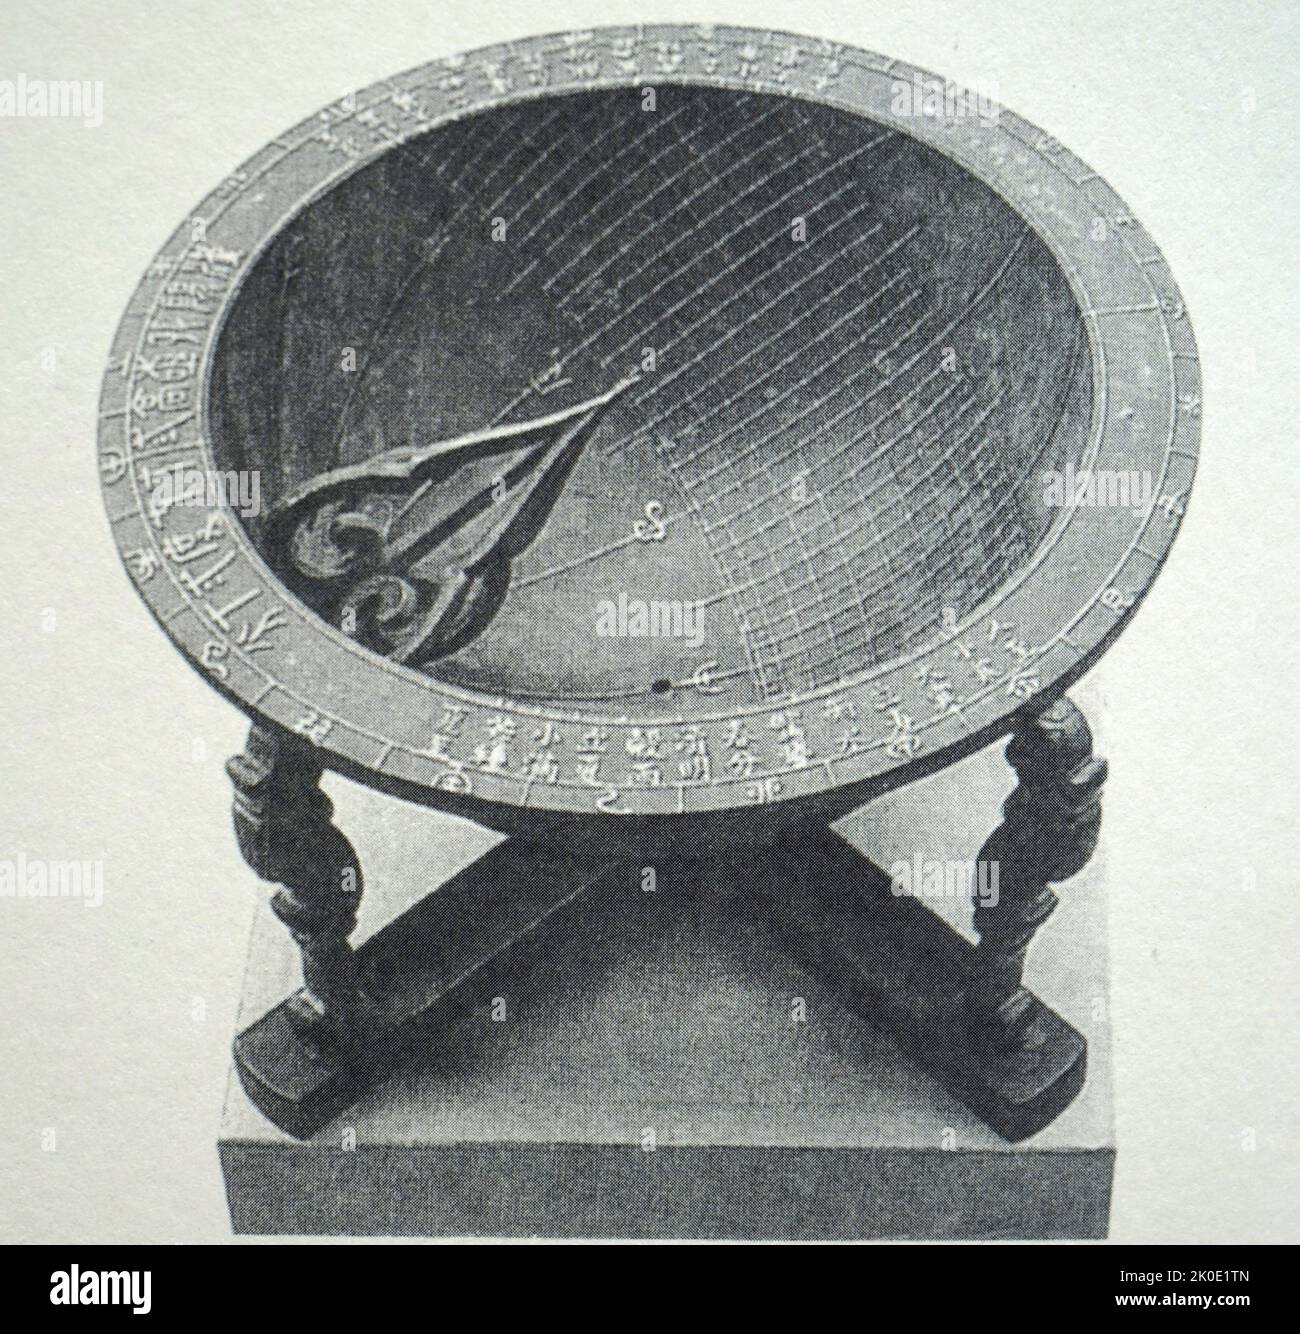 Schwarz-Weiß-Foto aus einem Buch einer Angbu-ilgu, einer konkaven Sonnenuhr in Form einer Halbkugel, die zum ersten Mal 16 Jahre Herrschaft von König Sejong (1434) war. Das setzte sich aus den Stundenlinien, den Saisonlinien, sibanmyeon, Yeoungchim und der horizontalen Oberfläche zusammen. Stockfoto